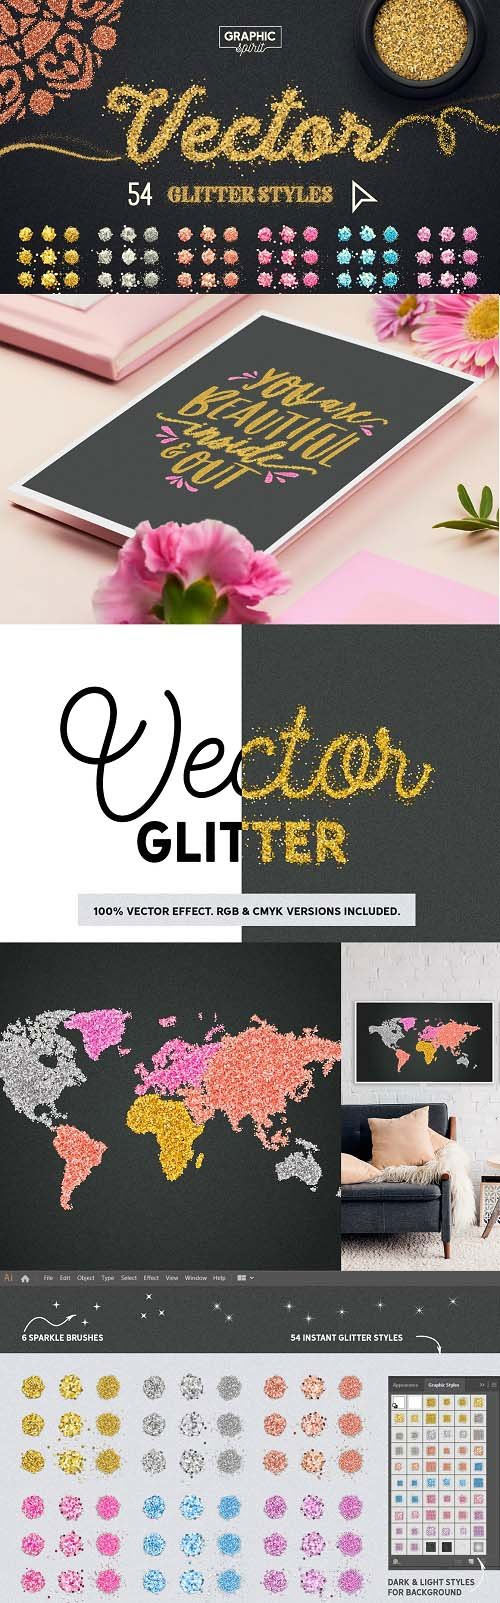 Vector Glitter For Adobe Illustrator 3736097